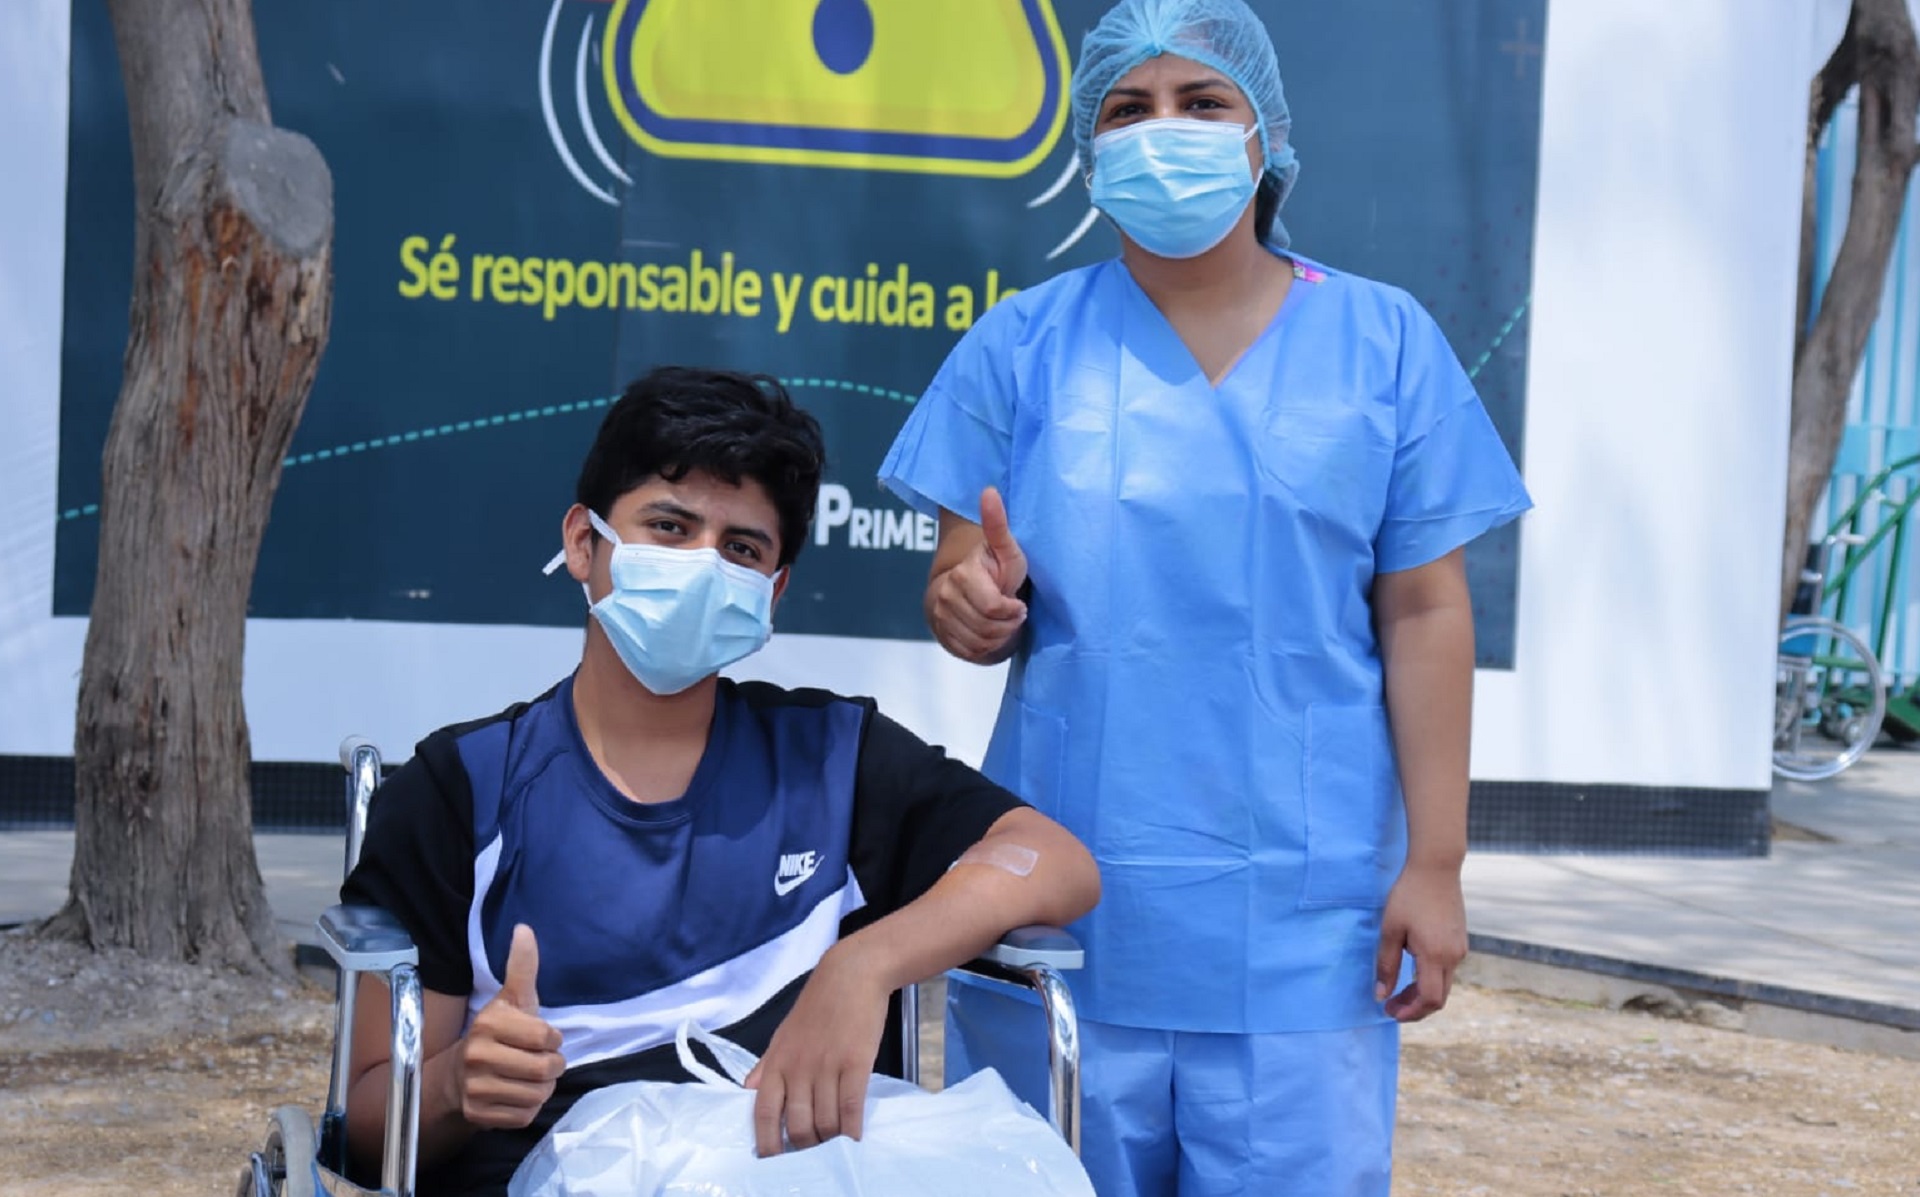 Essalud - Adolescente vence al COVID-19 en su cumpleaños gracias a médicos de la Villa EsSalud Piura